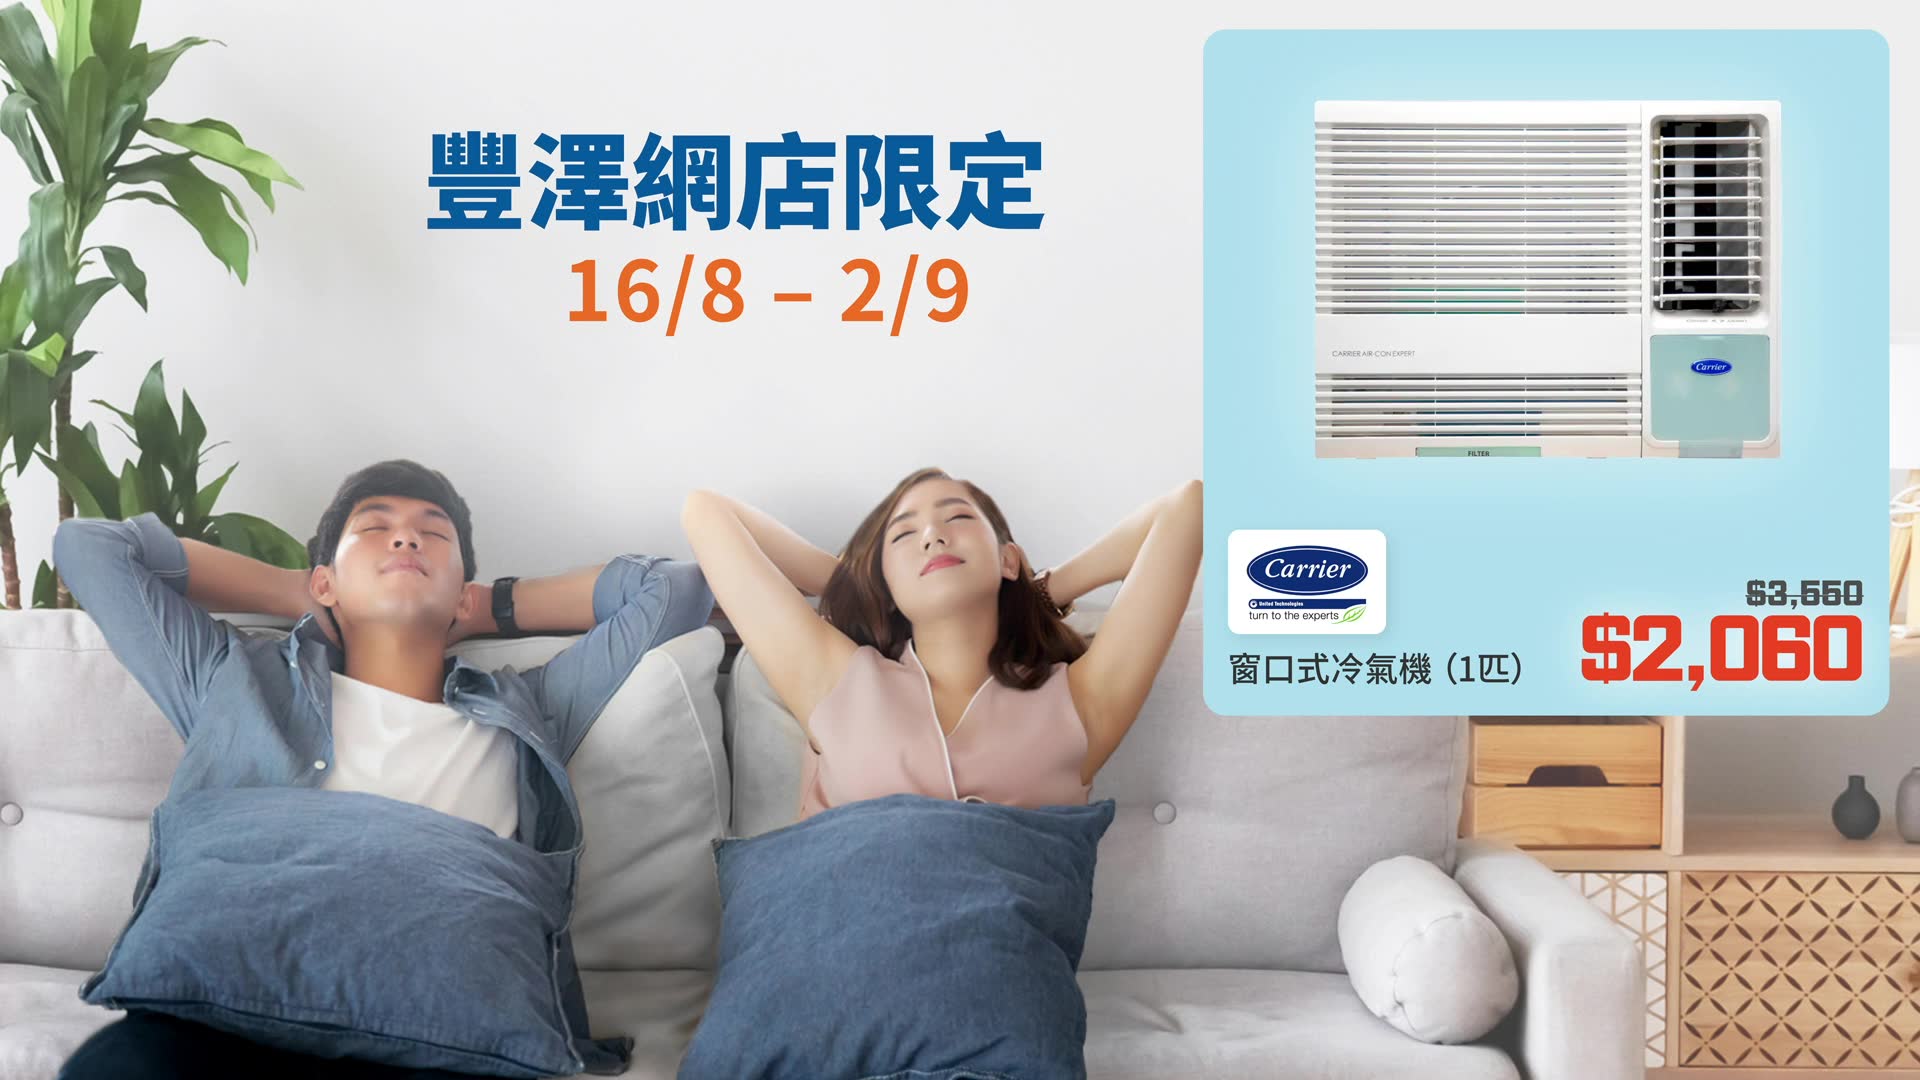 【冷氣機千七蚊有交易🤯❓】豐澤網店限定 獨家冷氣機型號低至五六折❗️